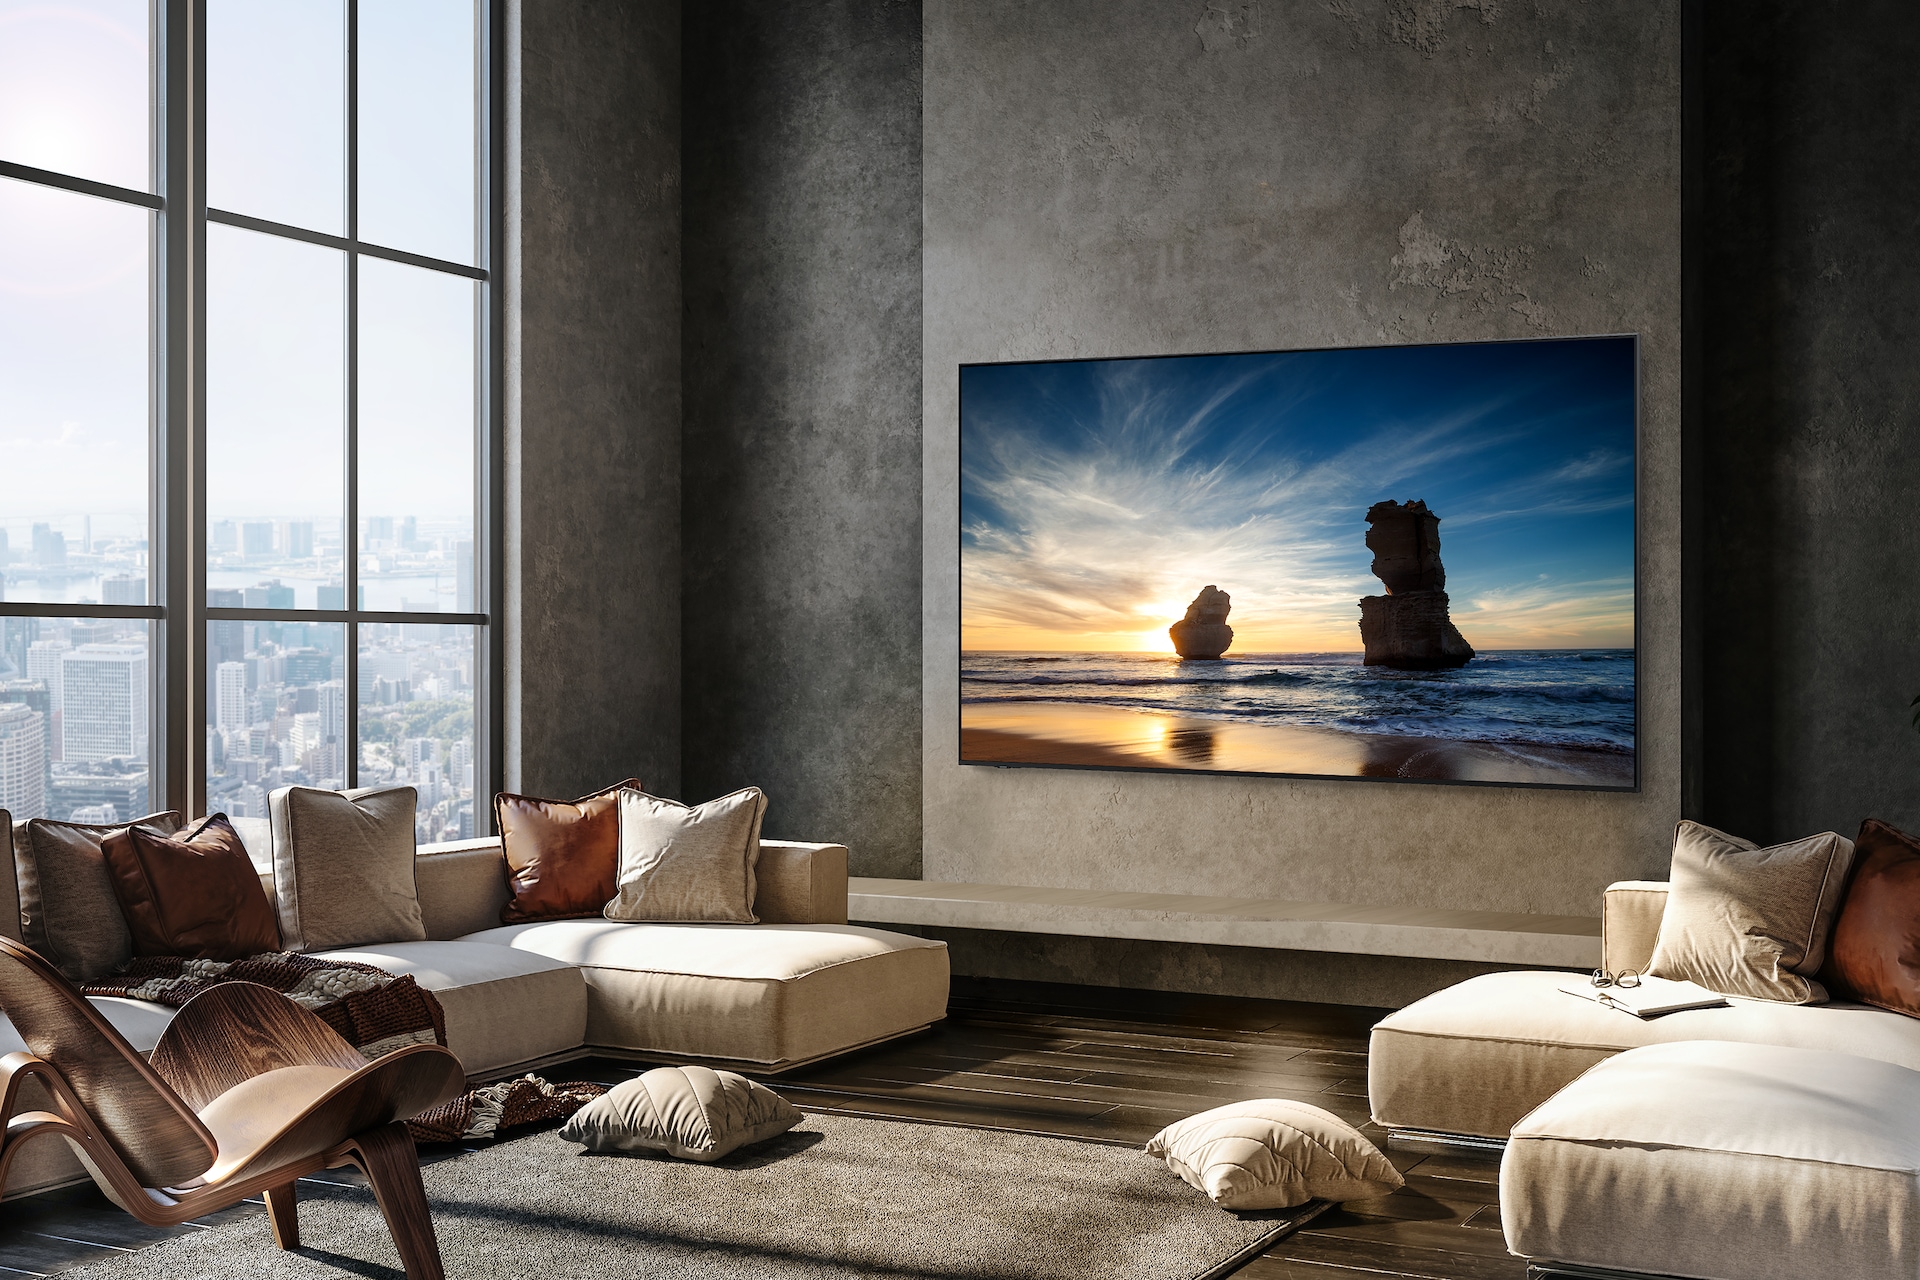 벽에 TV가 설치되어 있으며, 화면에는 노을이 지고 있는 바닷가가 보입니다. TV 왼쪽에는 창이 있습니다. TV 앞에는 소파와 쿠션들이 있는 라이프스타일 컷입니다. 